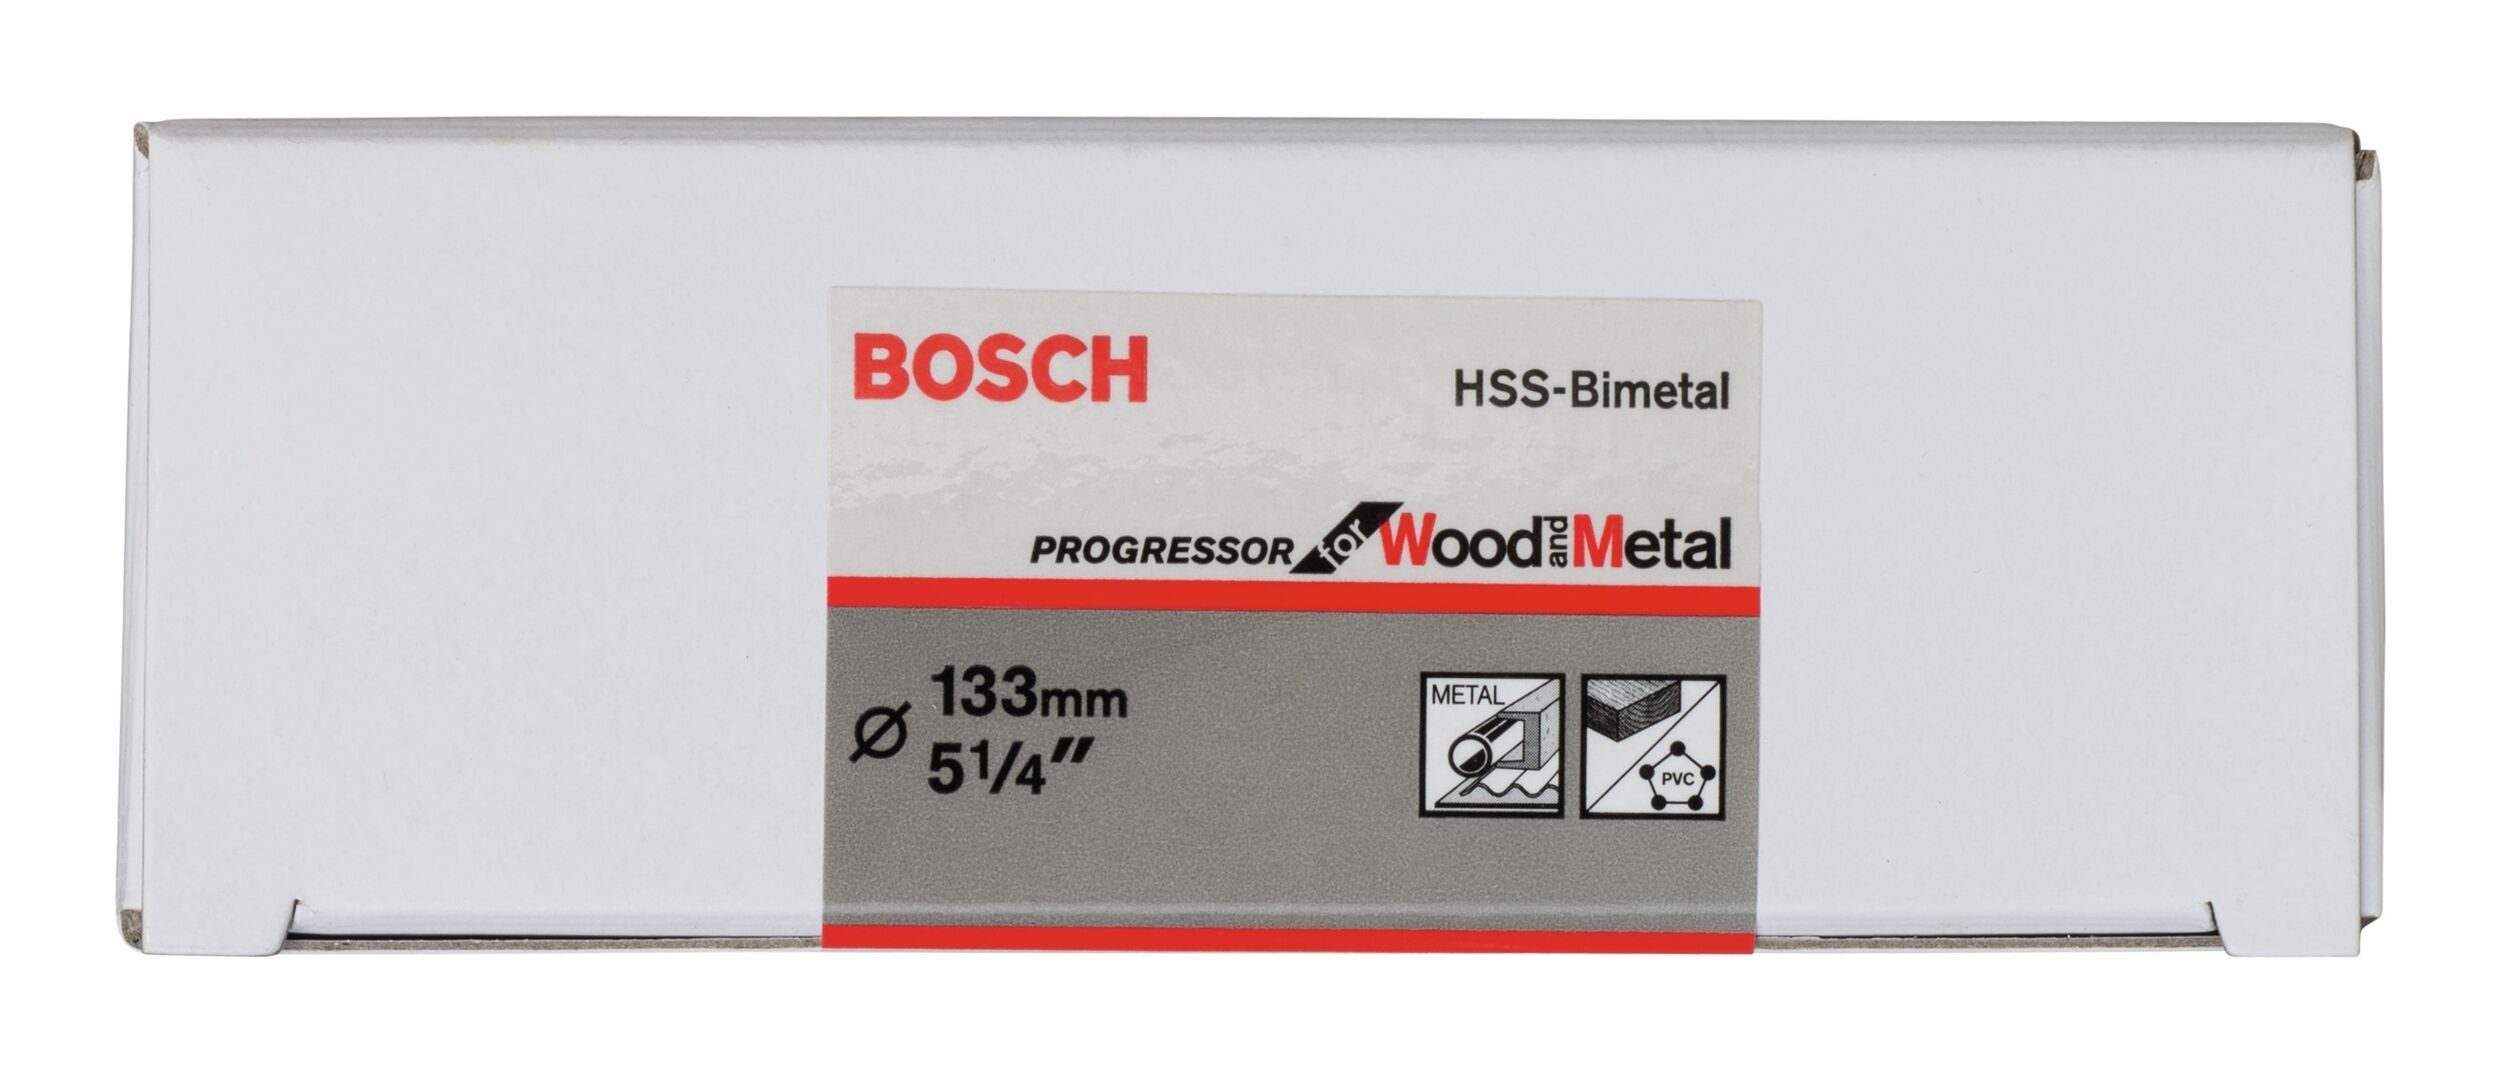 BOSCH für HSS-Bimetall 5 - 1/4" Standardadapter mm, 133 / Lochsäge, Ø